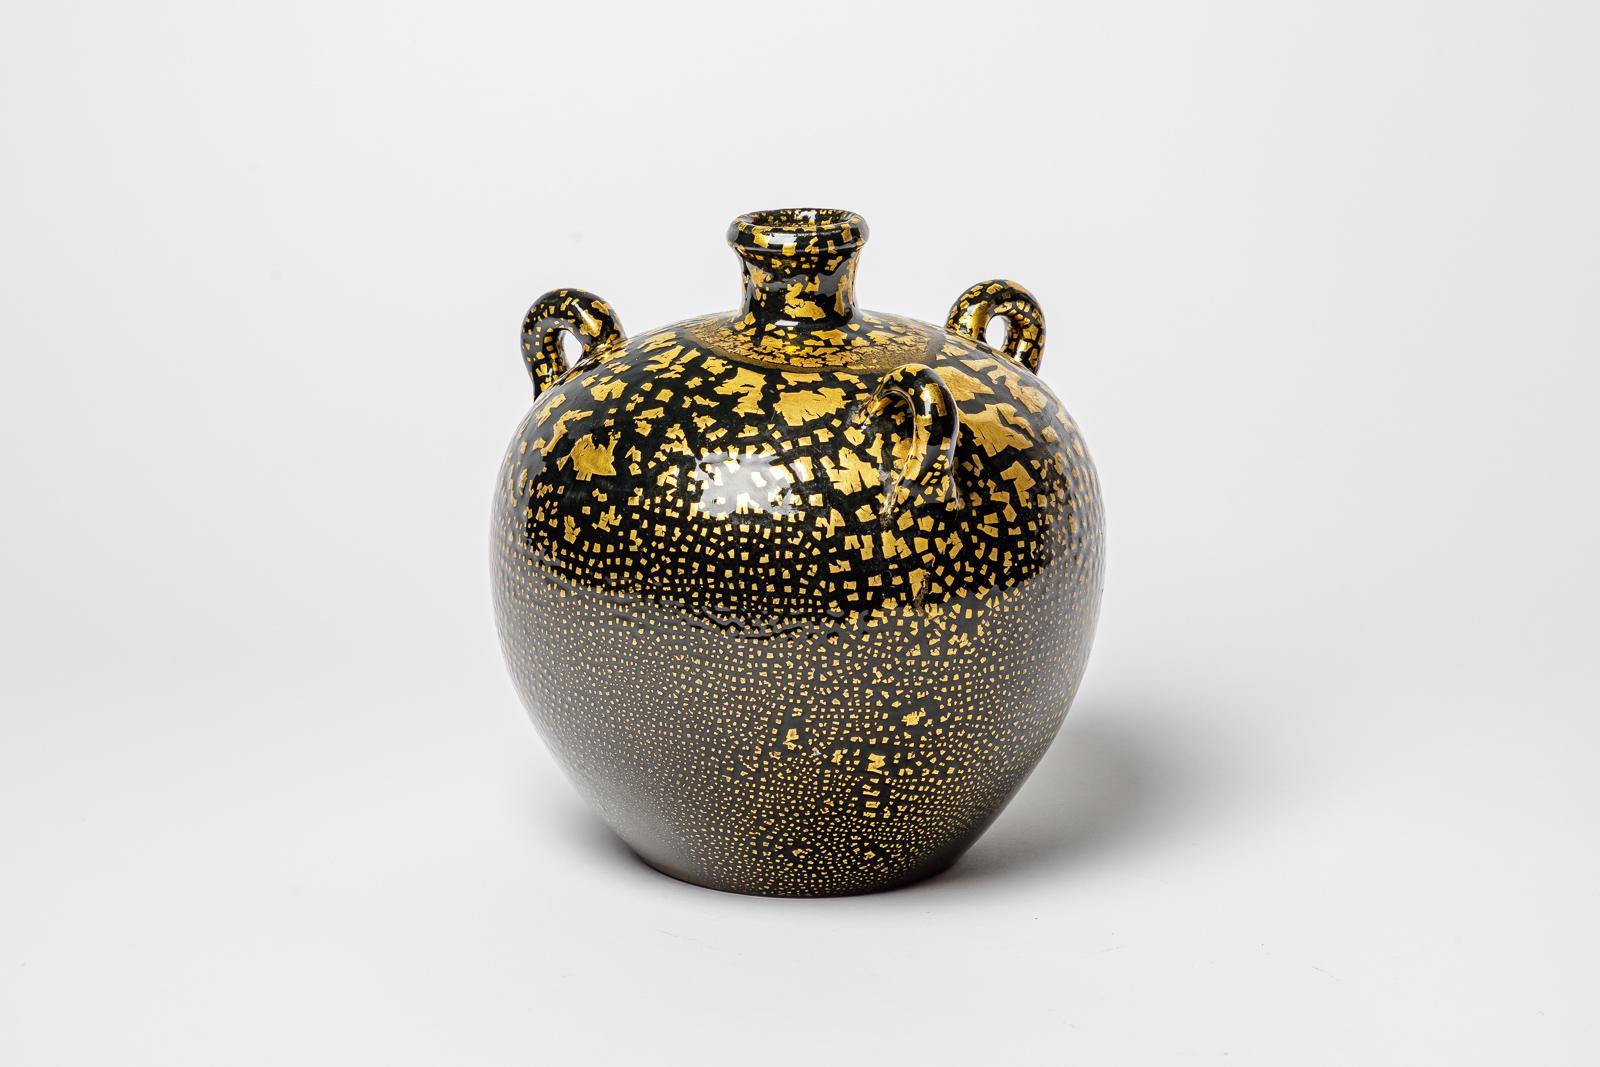 Schwarz und gold glasierte Keramikvase im Stil von Jean Besnard.
Etwa 1950-1960.
H : 10,6' x 8,7' Zoll.